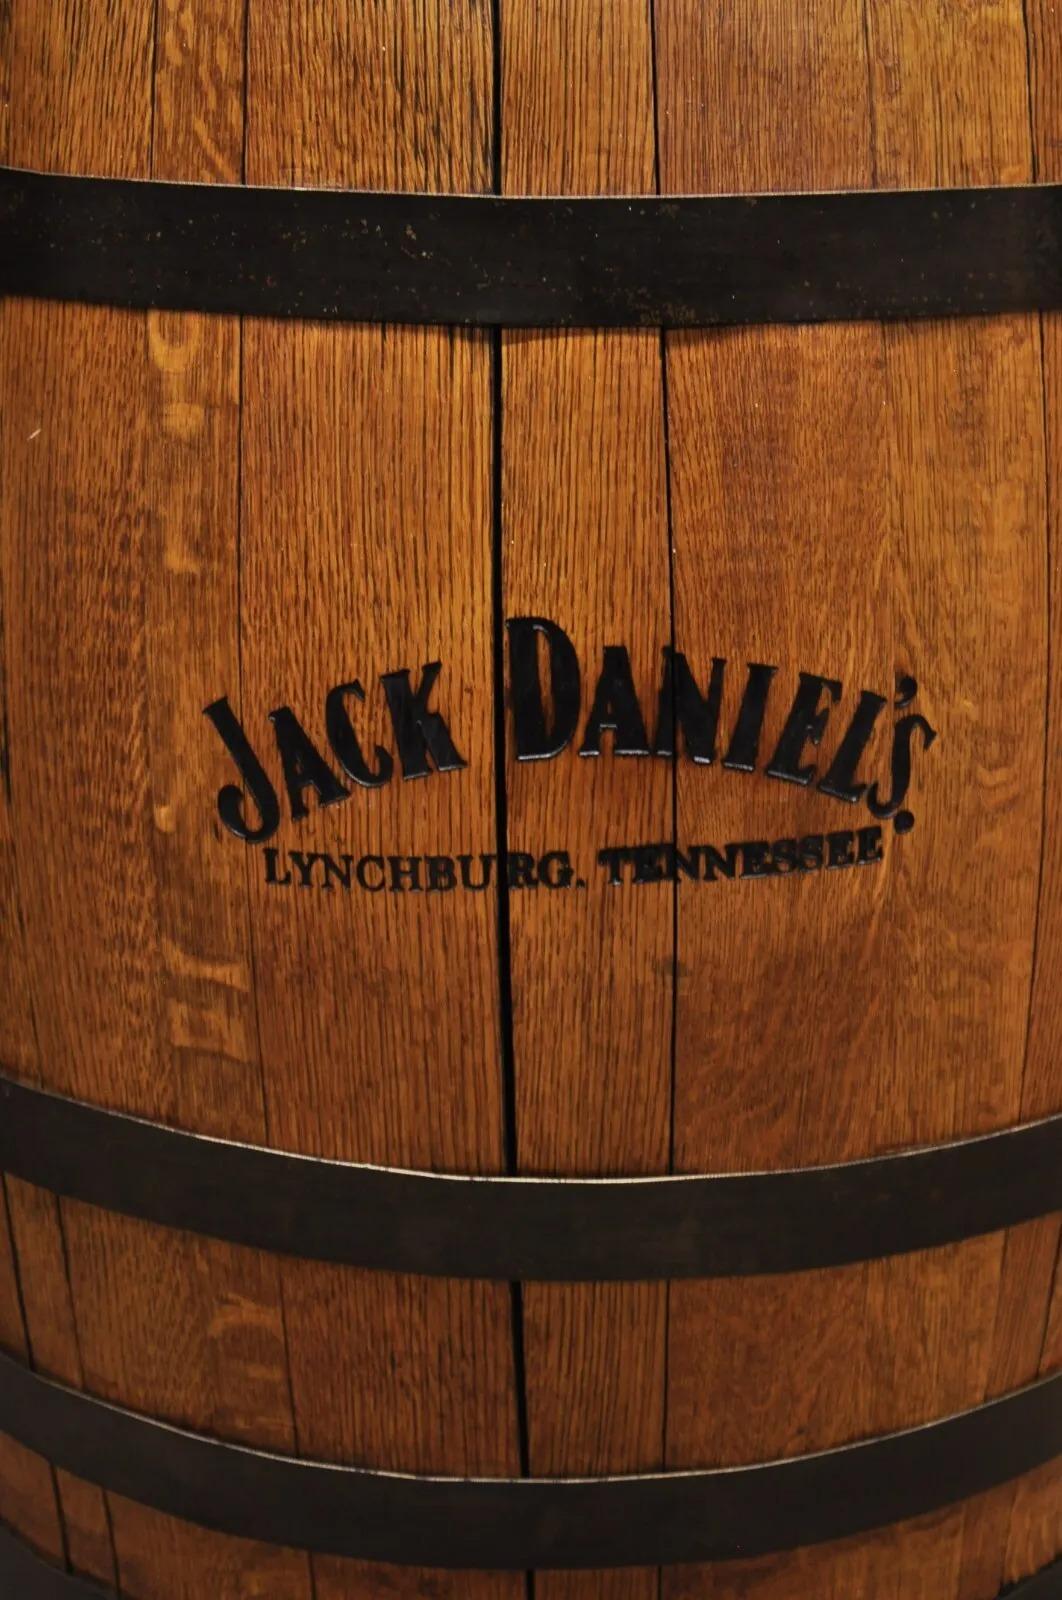 Modern Jack Daniels Whiskey Barrel Engraved Oak Wood Metal Bands For Sale